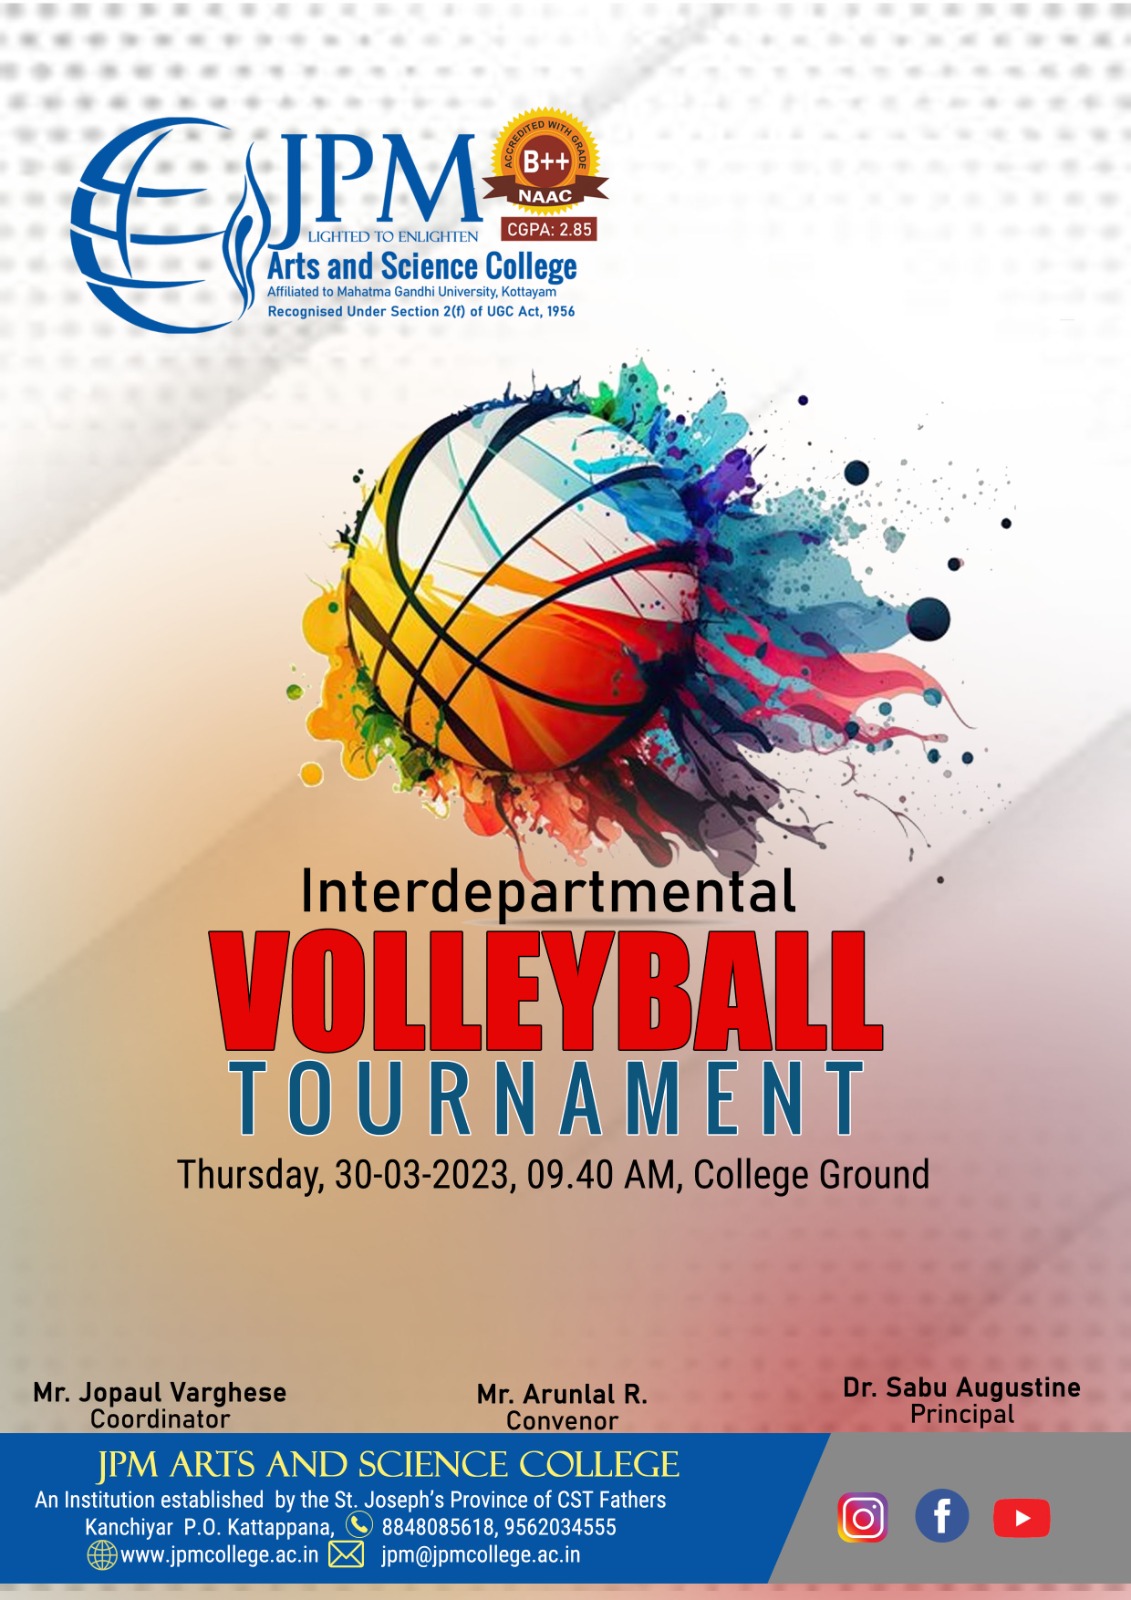 Interdepartmental Volleyball tournament